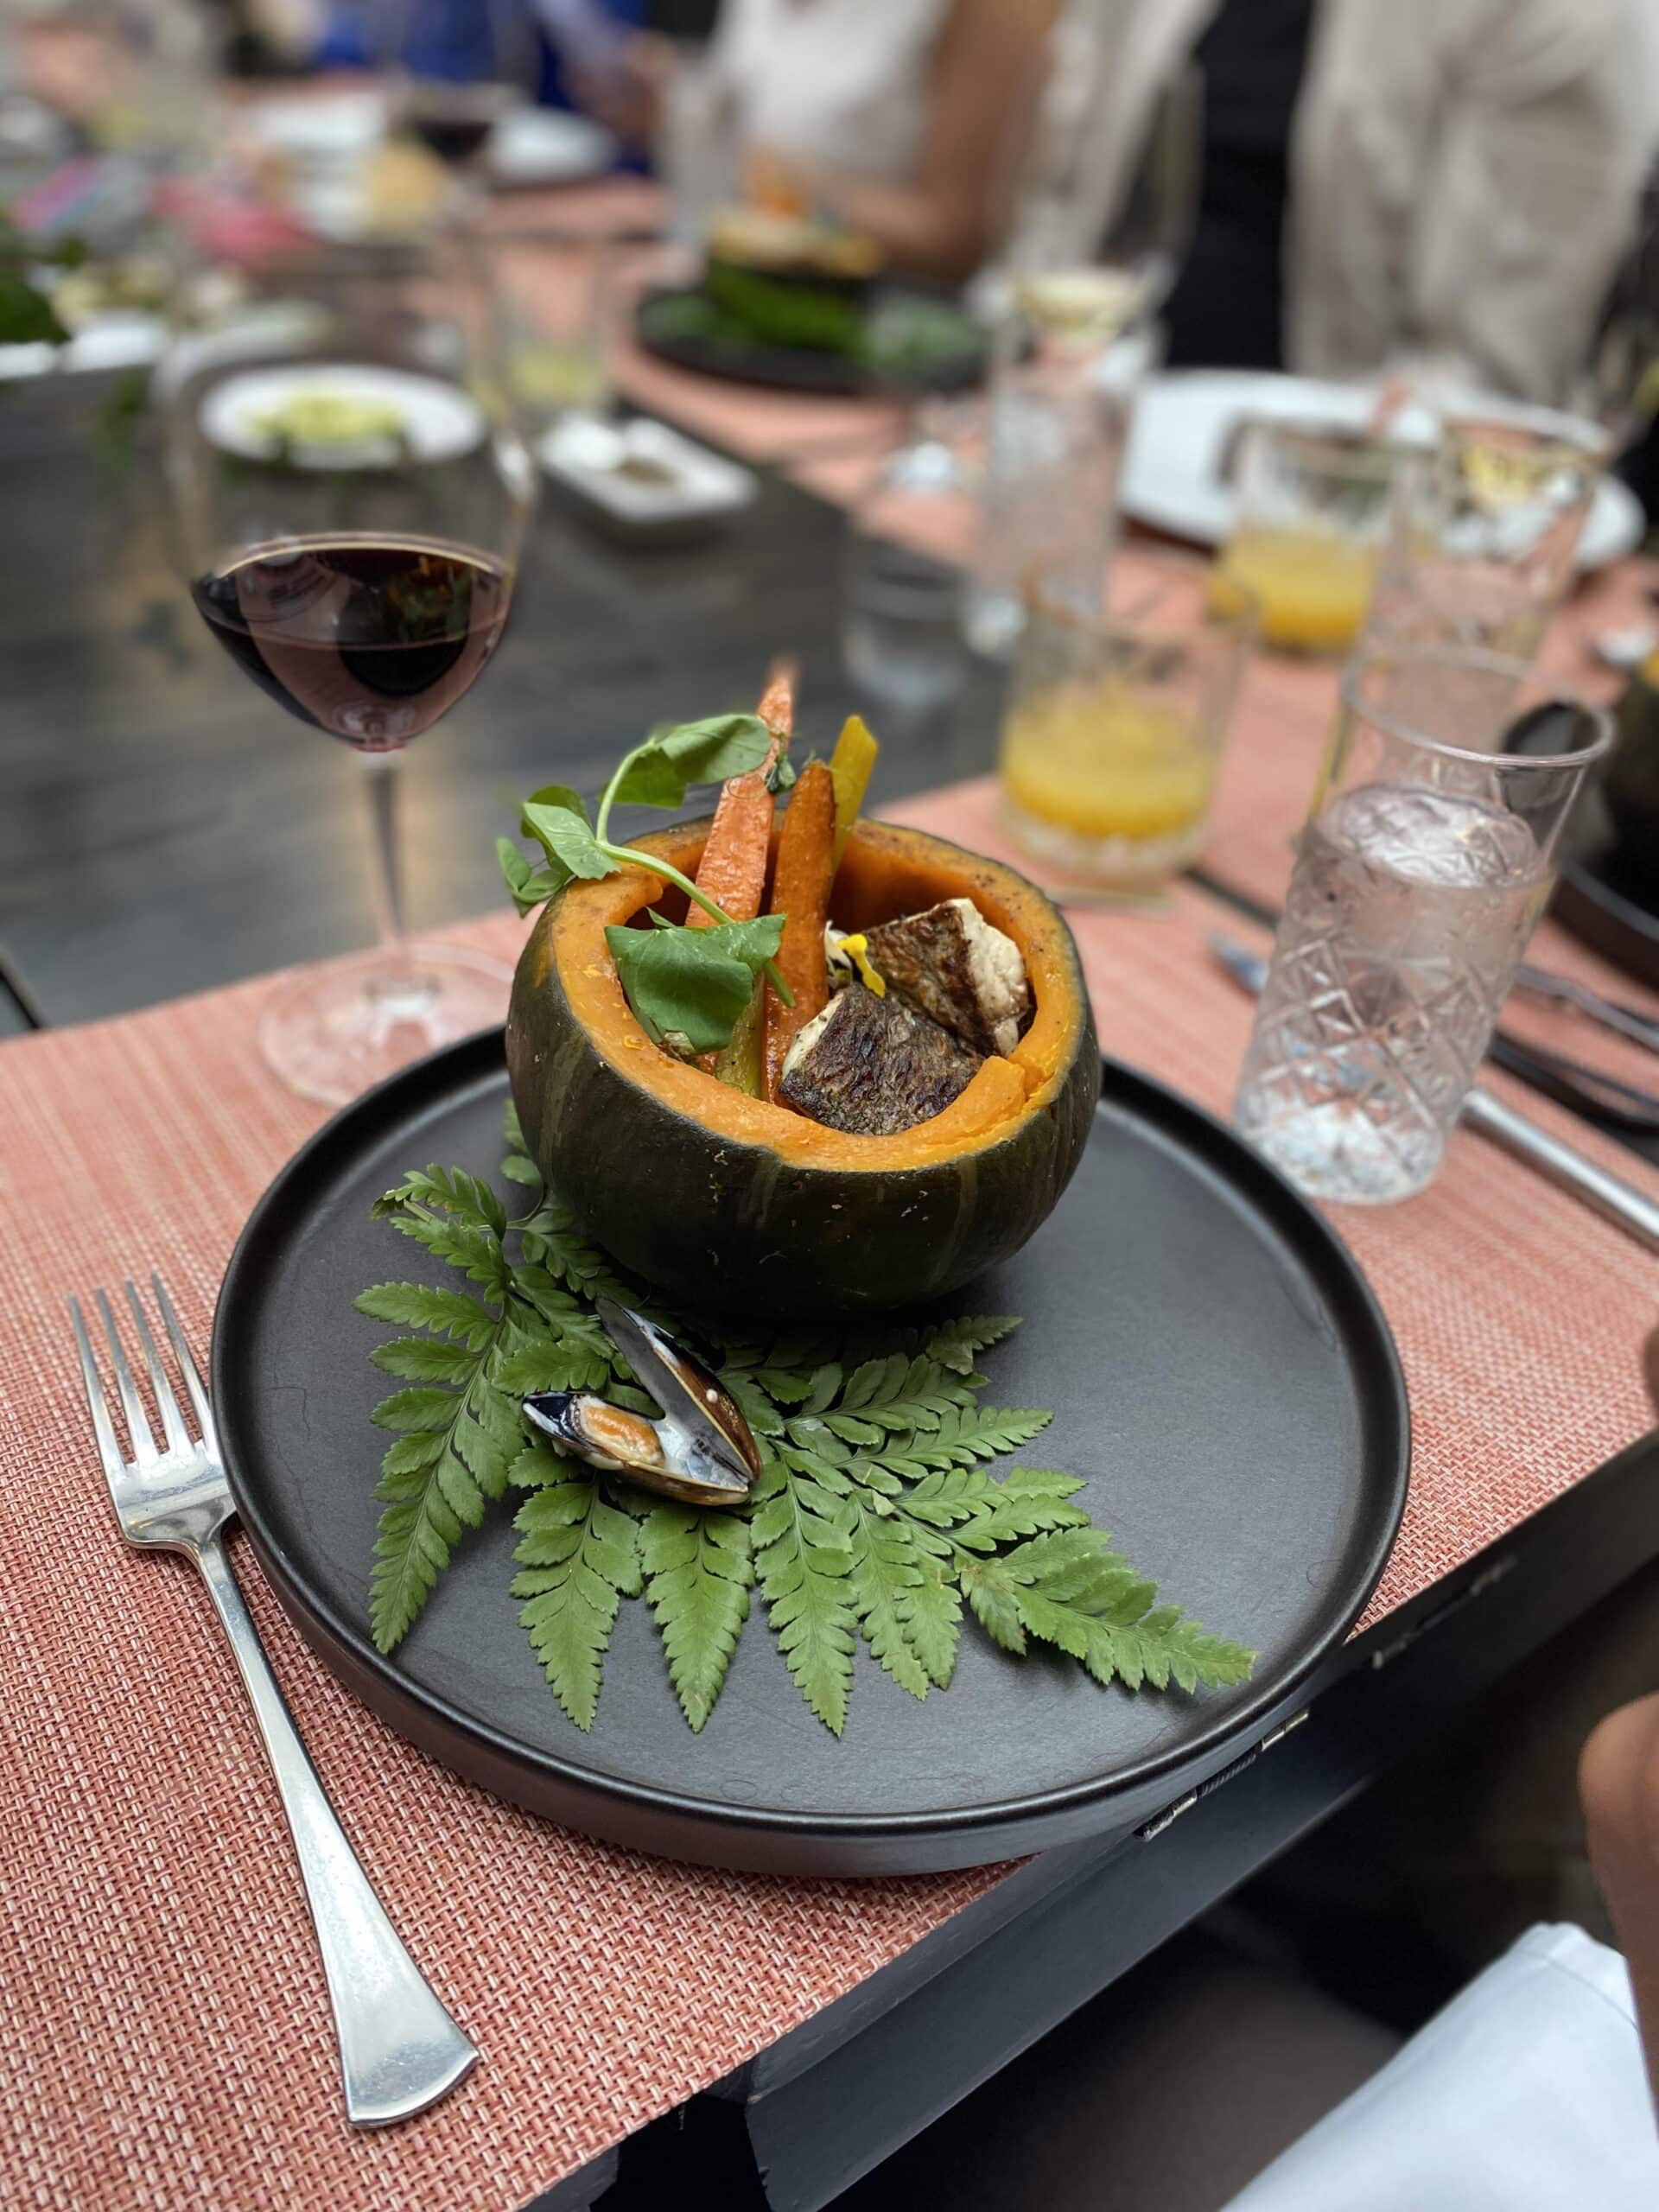 Hotel Marquis Reforma renueva su propuesta culinaria con chef de lujo